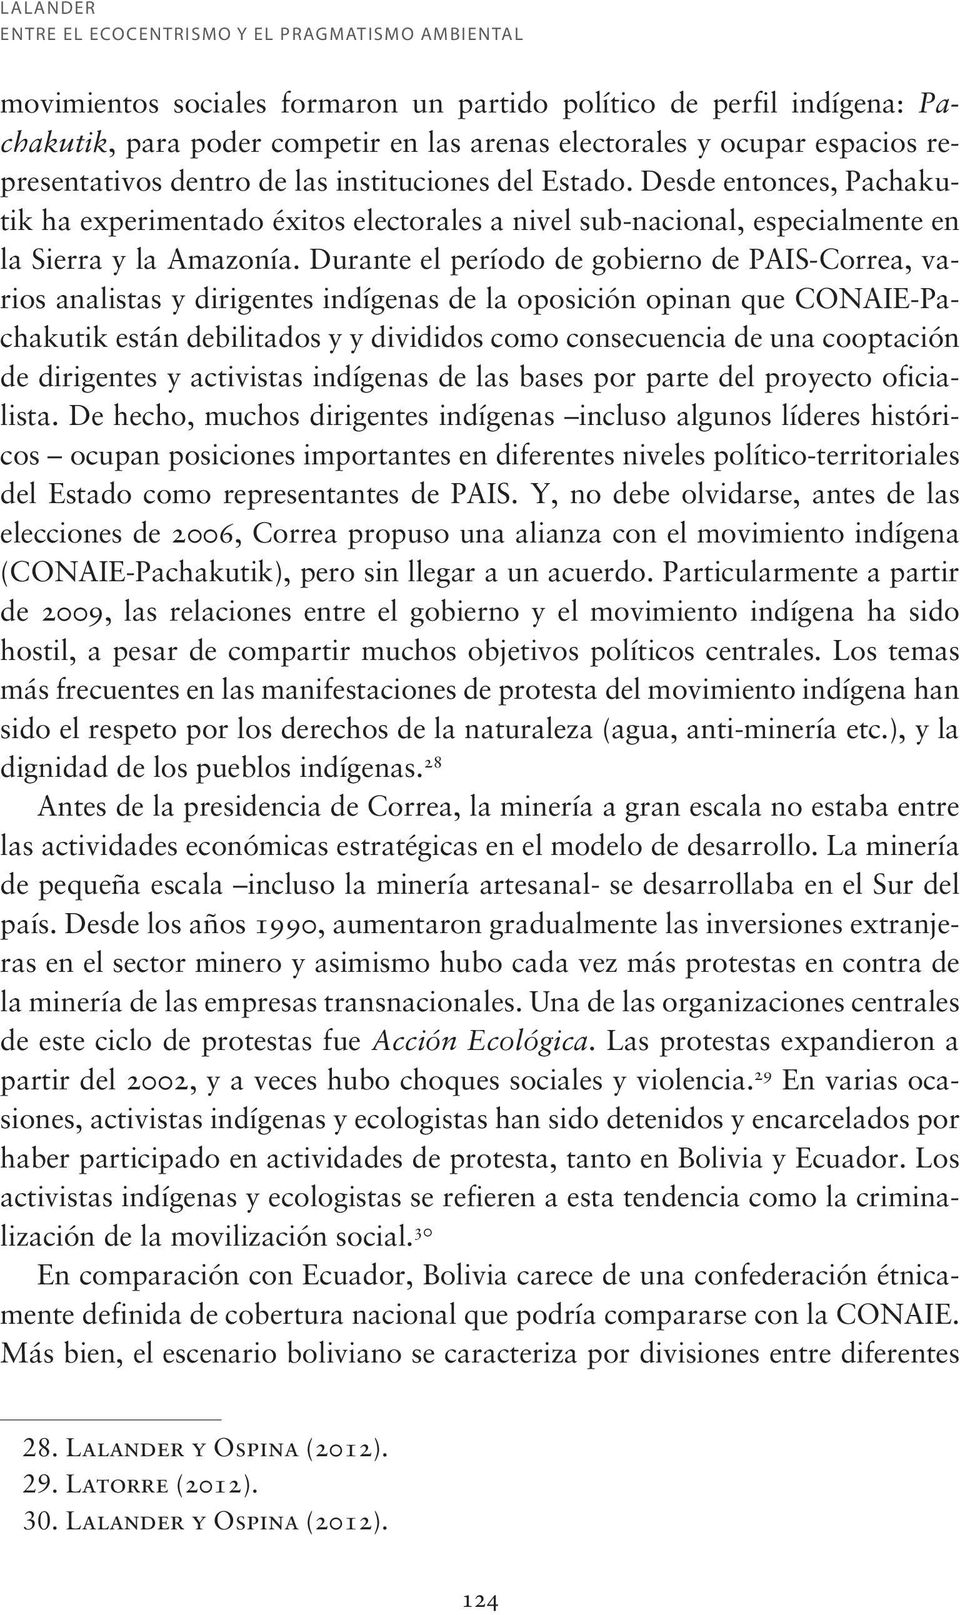 Durante el período de gobierno de PAIS-Correa, varios analistas y dirigentes indígenas de la oposición opinan que CONAIE-Pachakutik están debilitados y y divididos como consecuencia de una cooptación